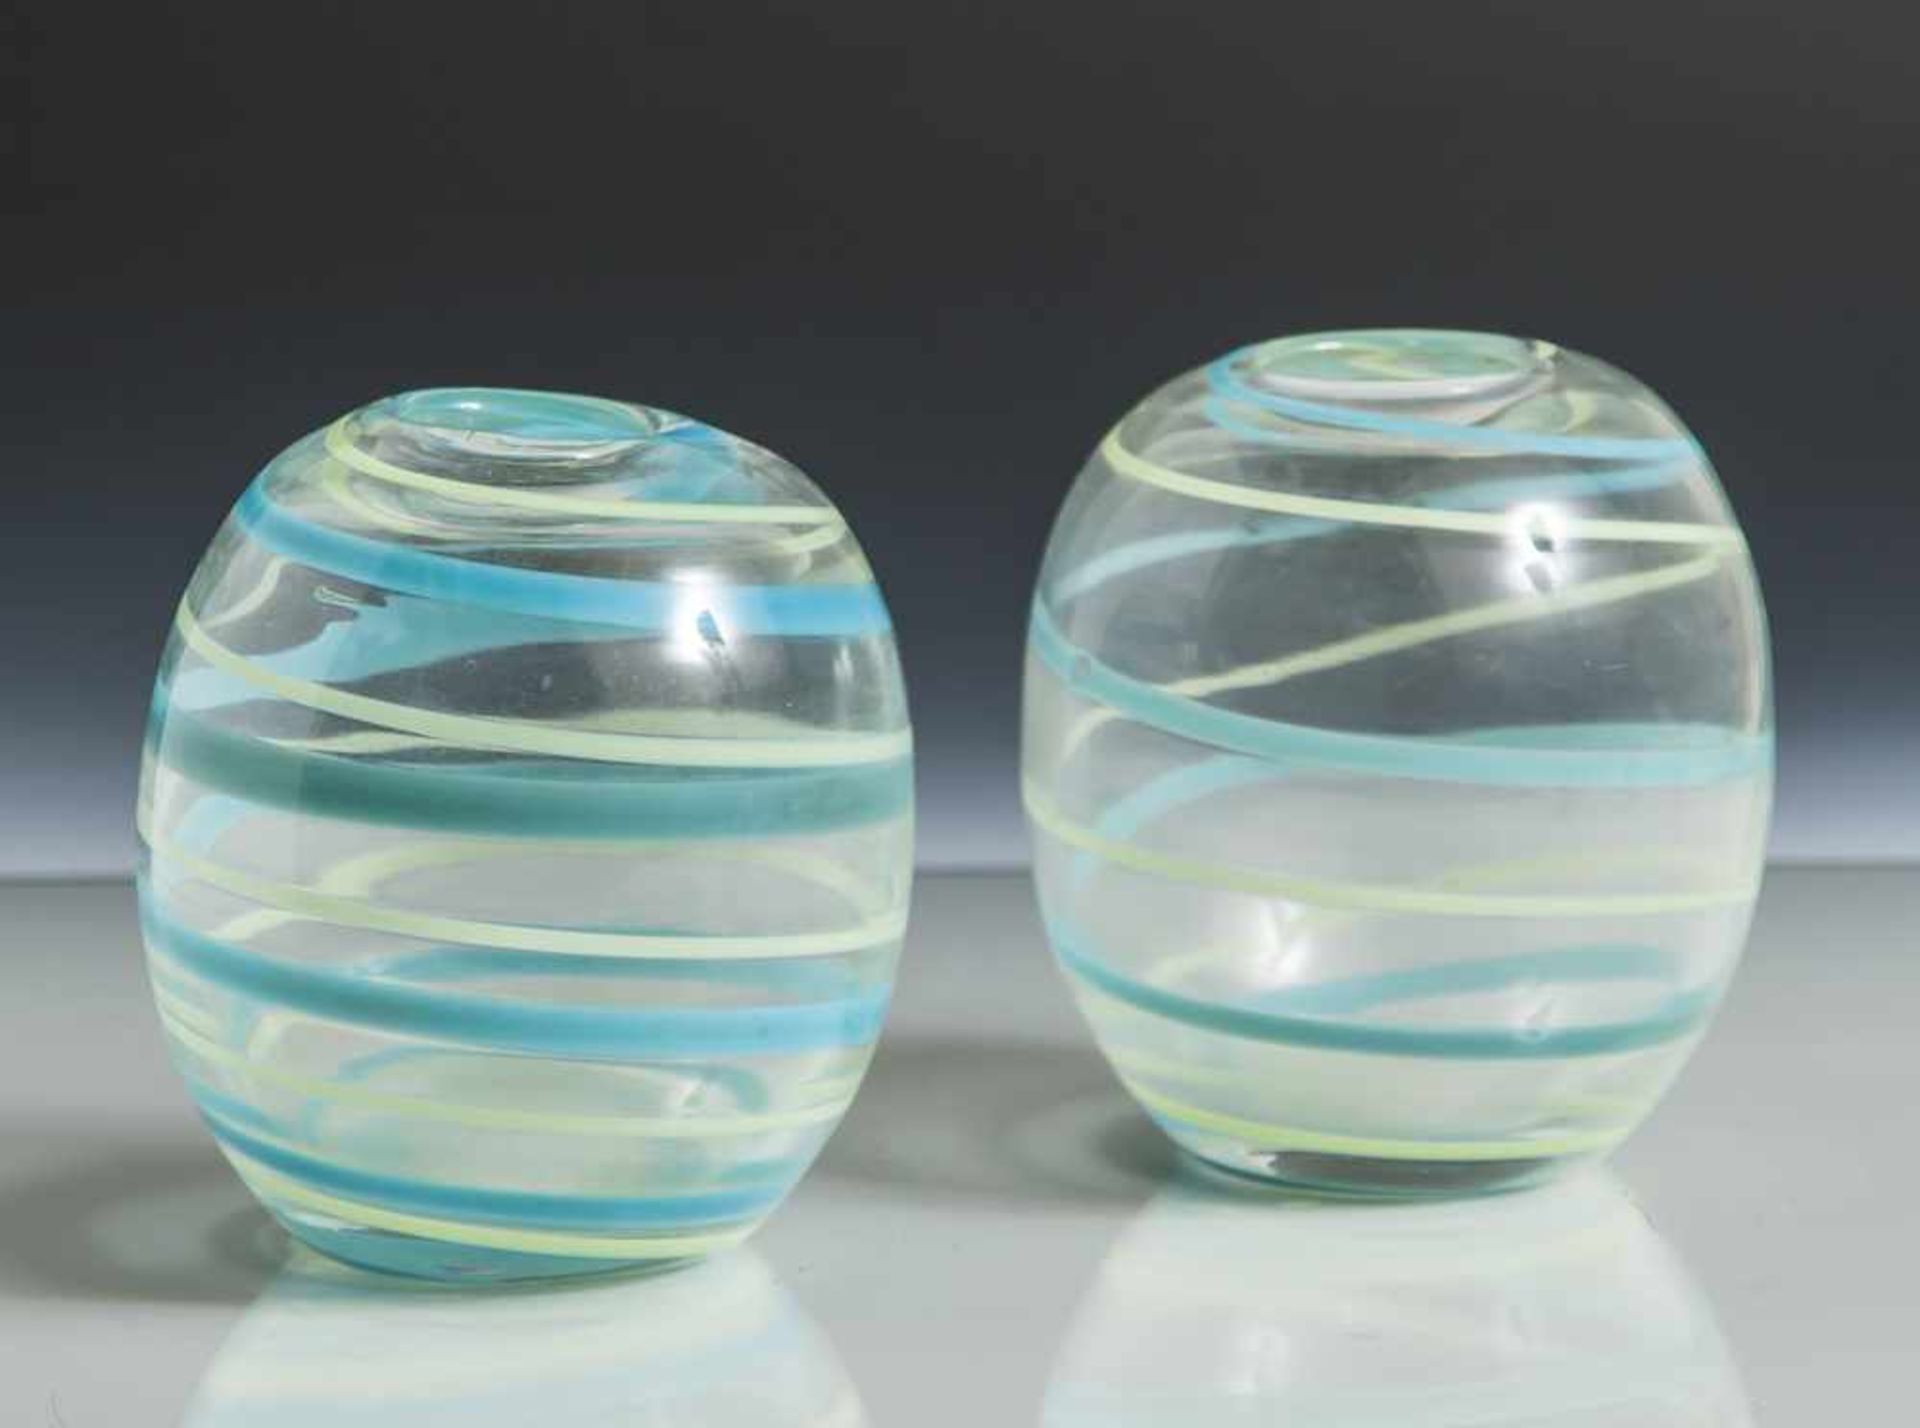 Paar kleine Vasen, farbloses Glas, spiralförmiges Liniendekor in Pastellblau und -grün, bauchige